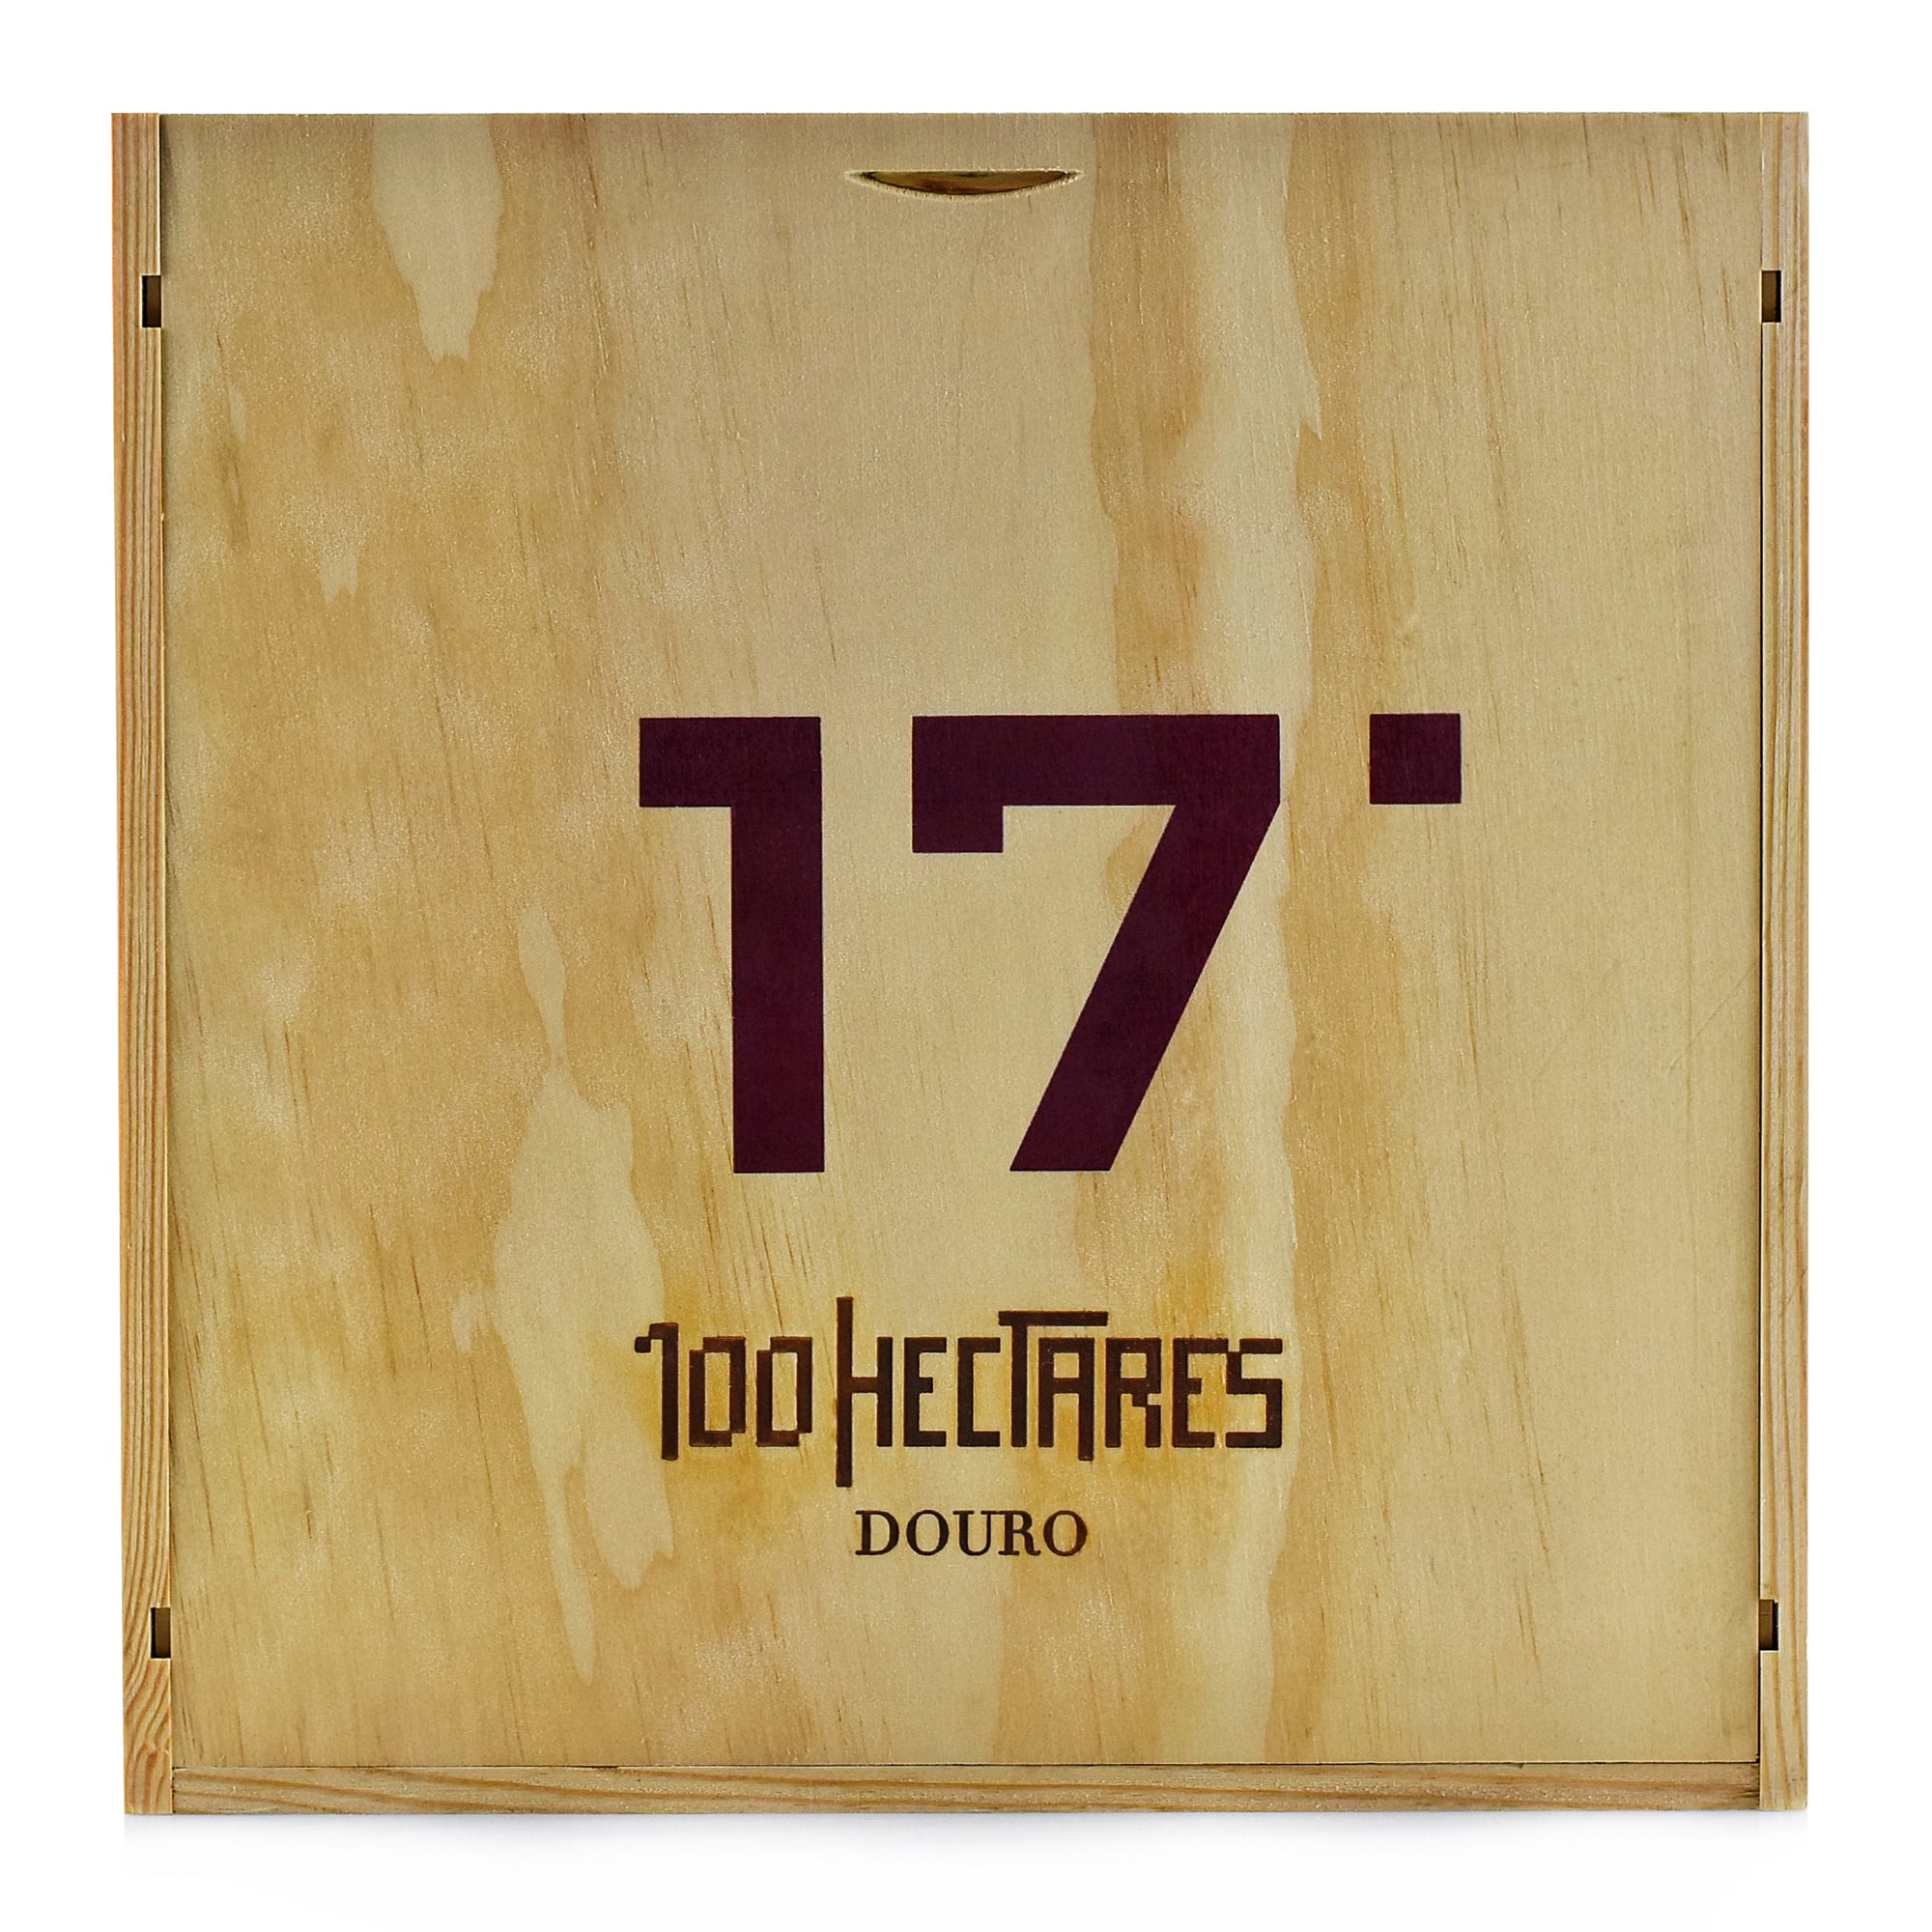 Conjunto 3 Vinhos 100HECTARES 17% BY VOL